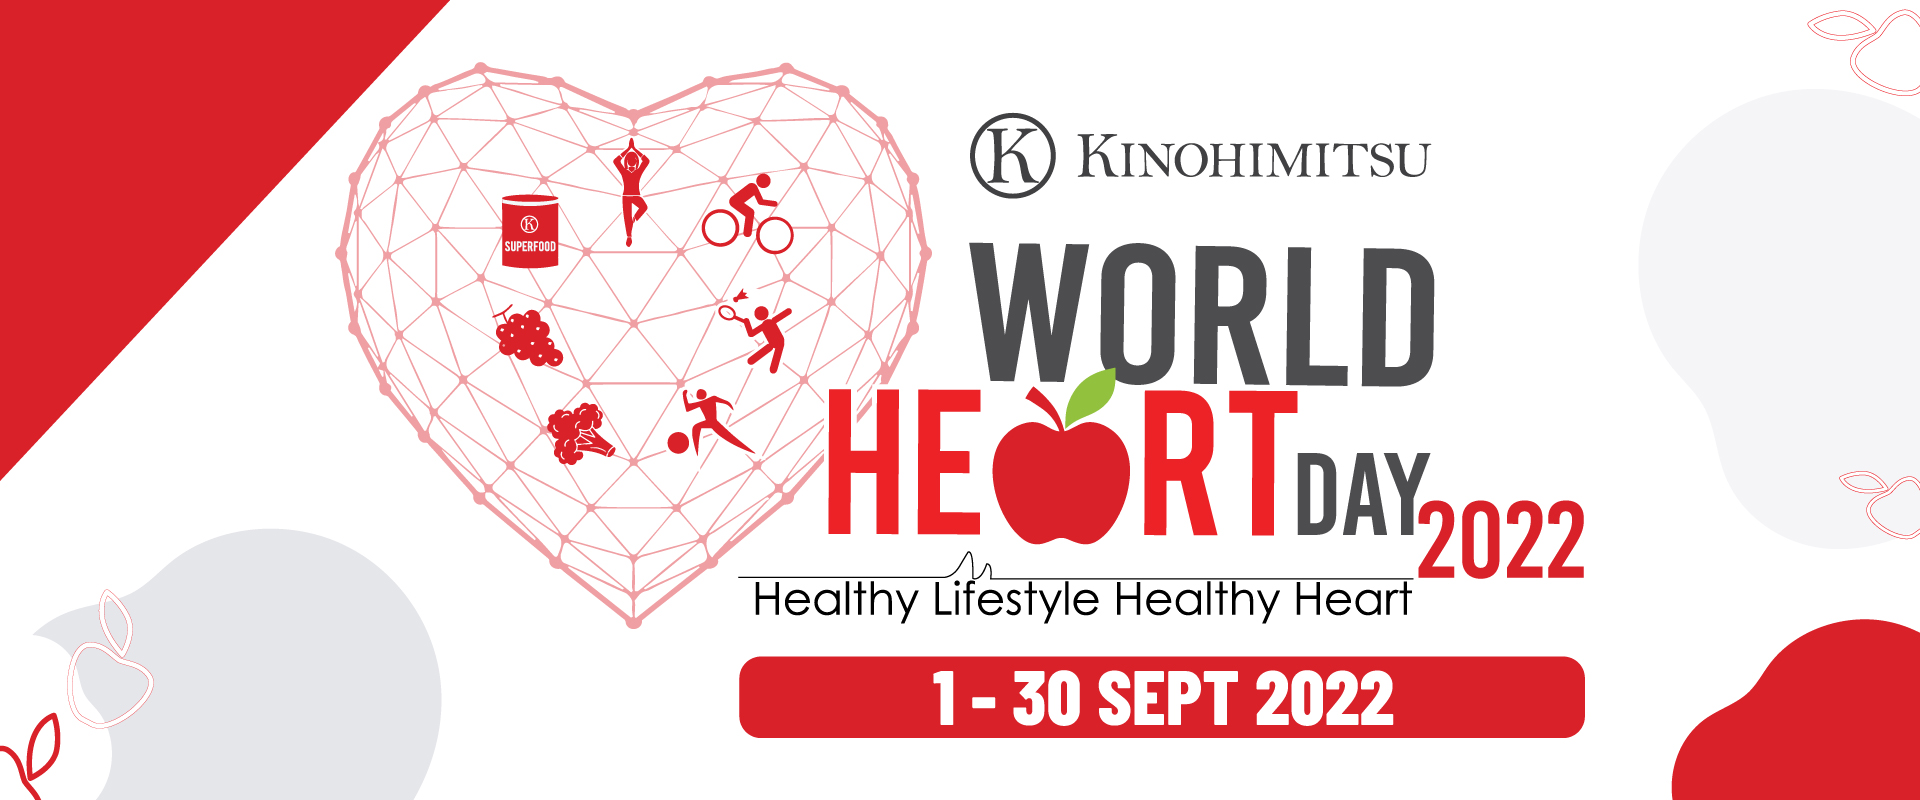 World Heart Day 